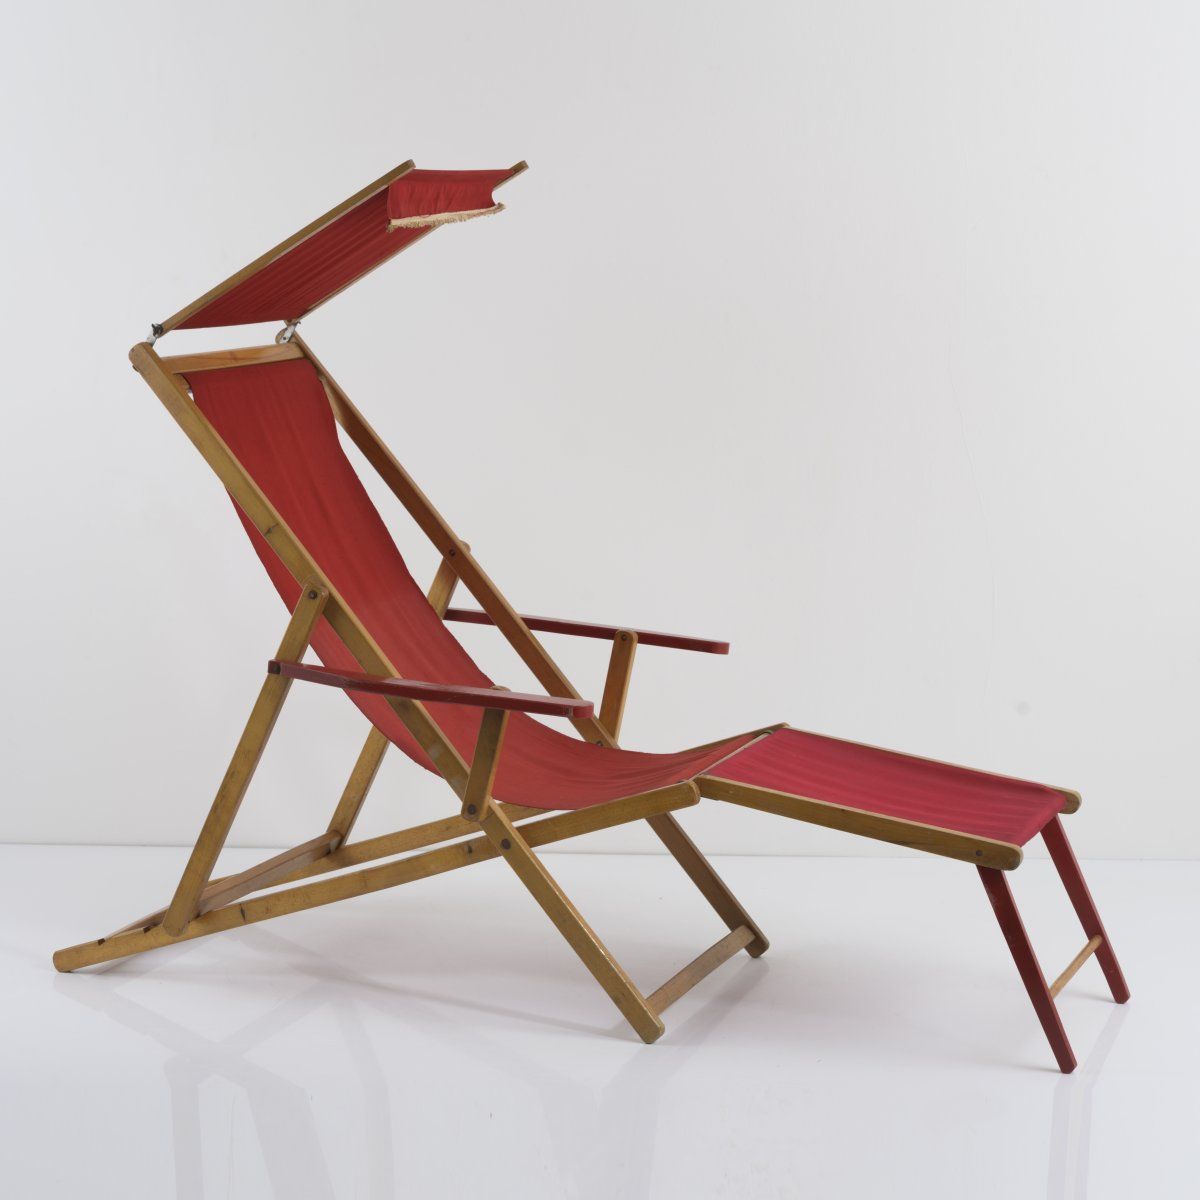 Null G. R. Ind.皮埃蒙特，太阳/甲板椅，1940年代，高113 - 122 x 69.5 x 107.5厘米。榉木，部分涂红，红色帆布。有标记。制&hellip;